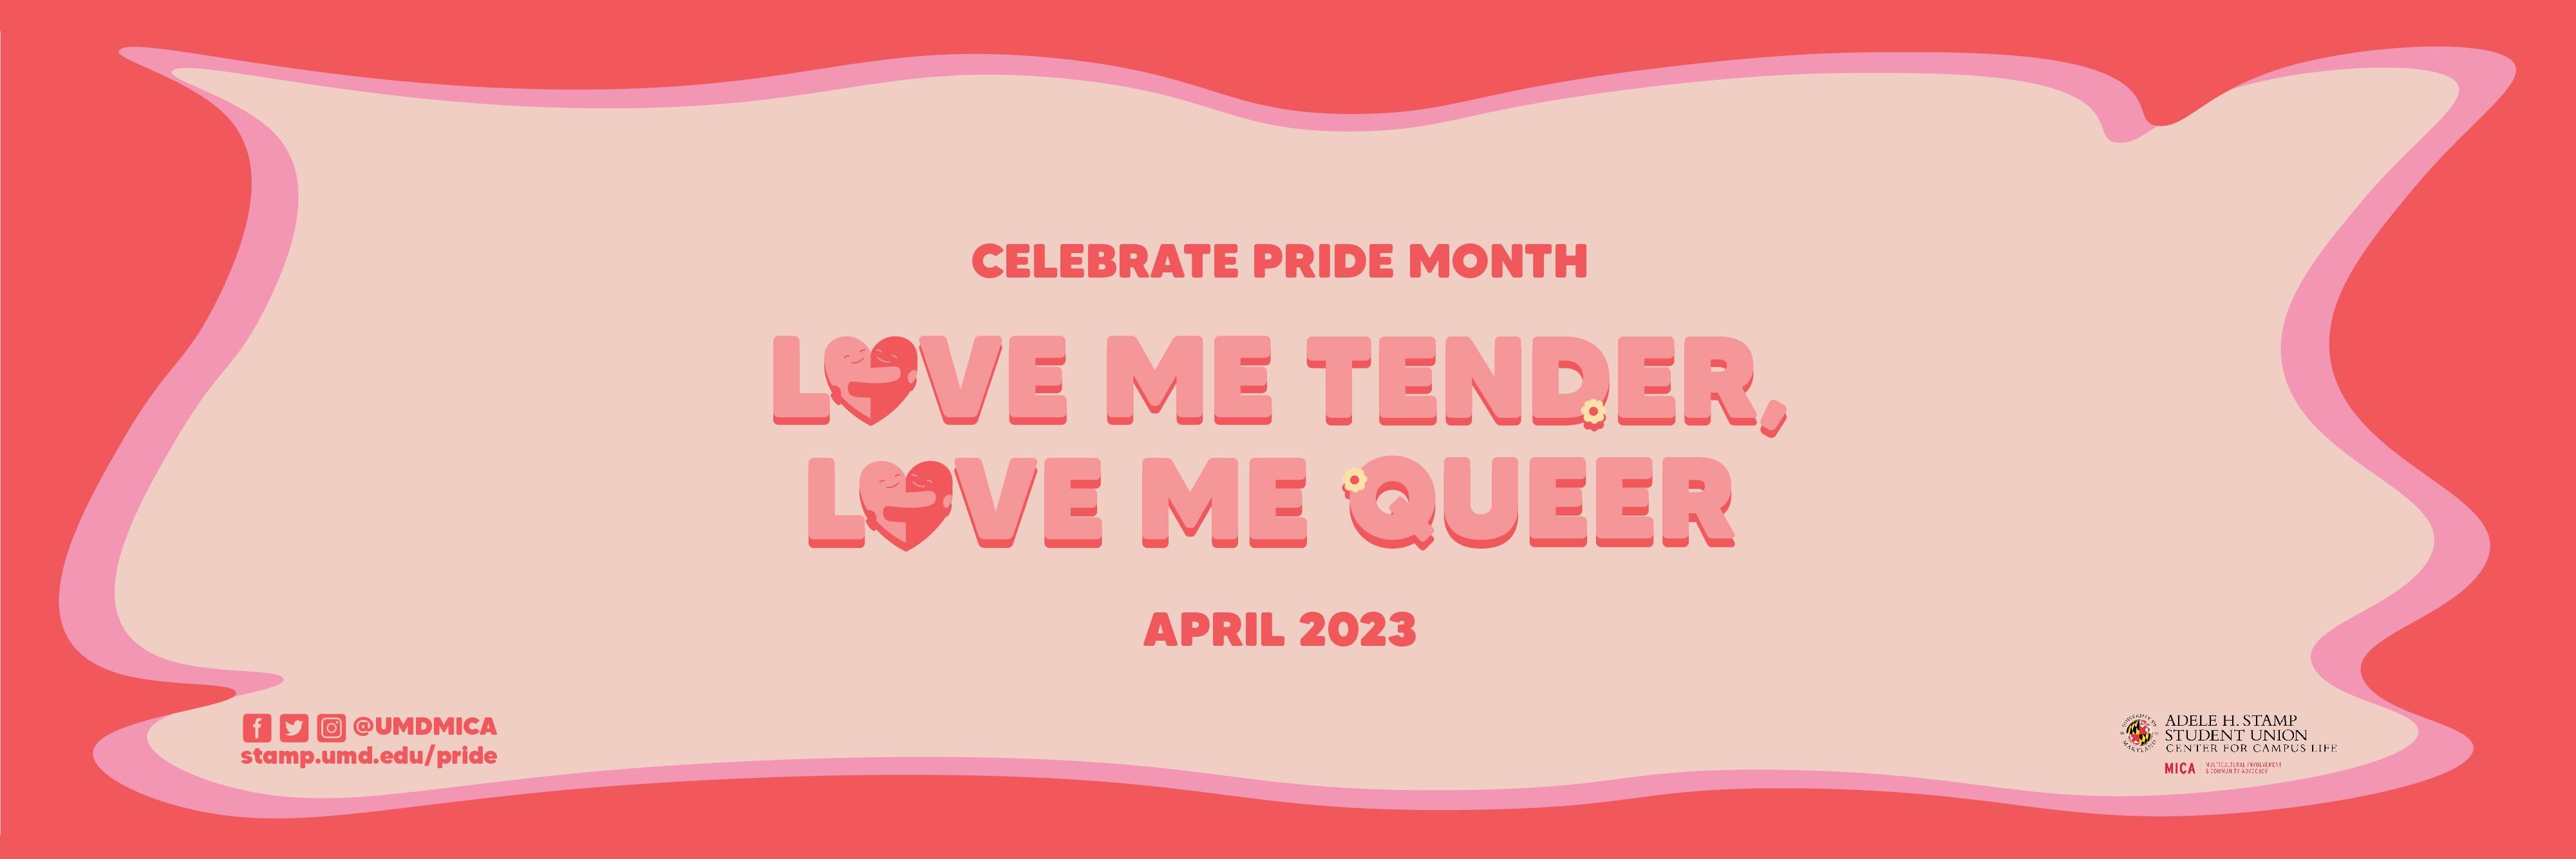 April is Pride Month: Love Me Tender, Love Me Queer